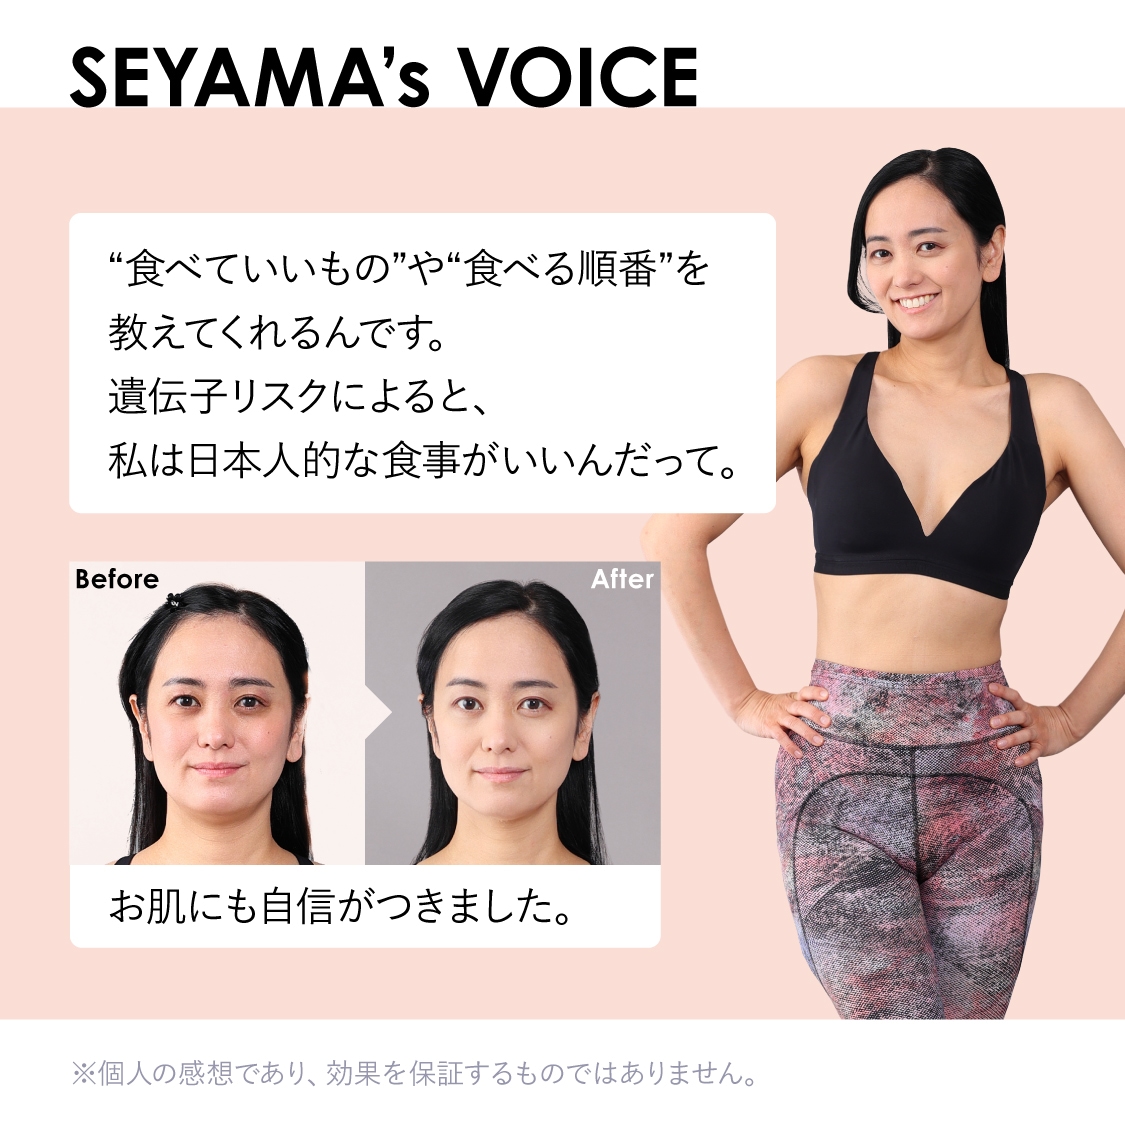 SEYAMA's VOICE　“食べていいもの”や“食べる順番”を教えてくれるんです。遺伝子リスクによると、私は日本人的な食事がいいんだって。お肌にも自信がつきました。※個人の感想であり、効果を保証するものではありません。